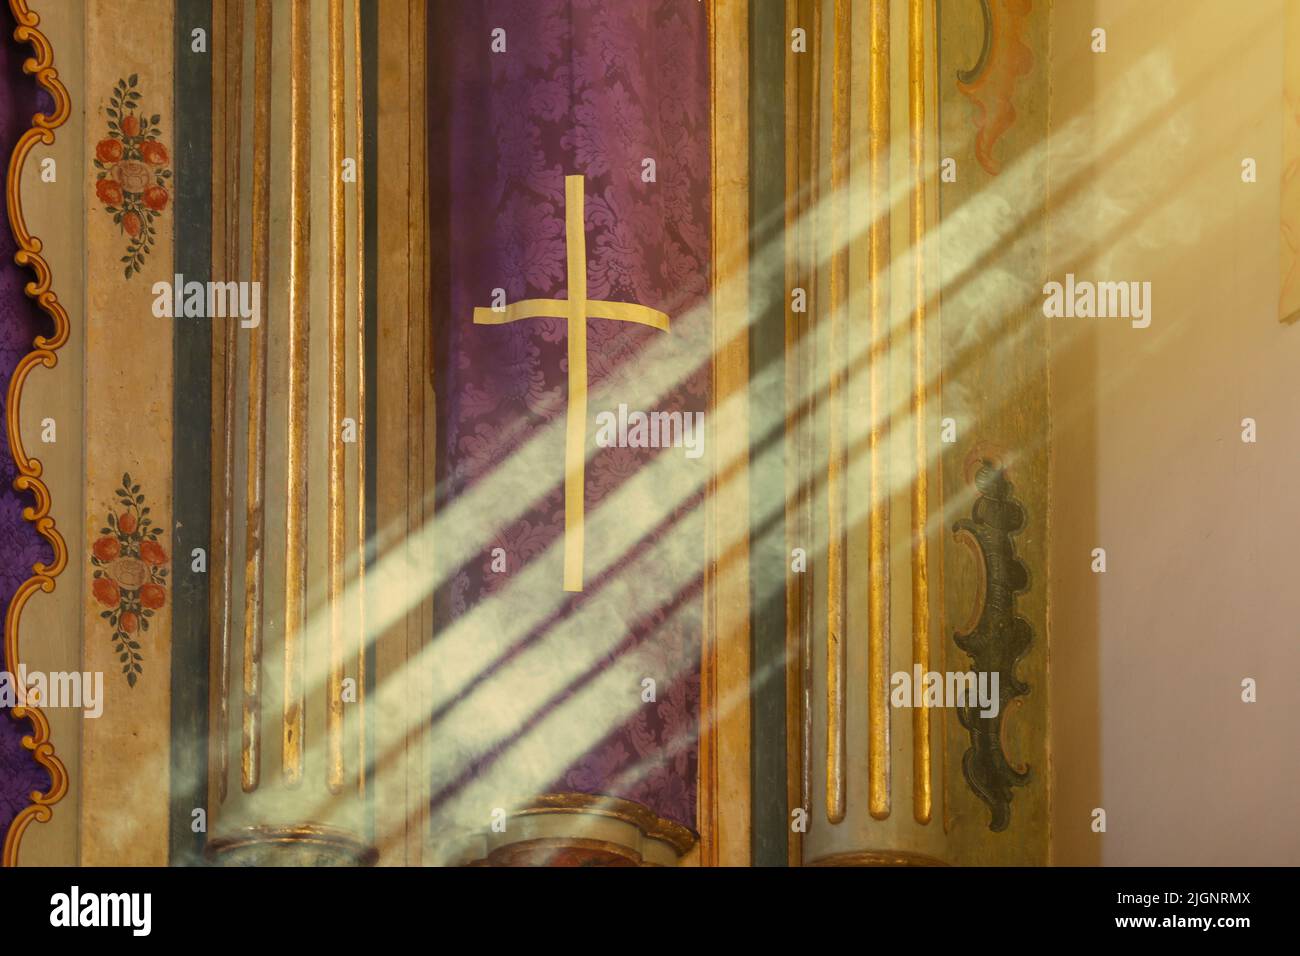 Símbolo religioso con tela de color púrpura con diseño de la cruz que recibe rayos del sol de la luz de la ventana Foto de stock